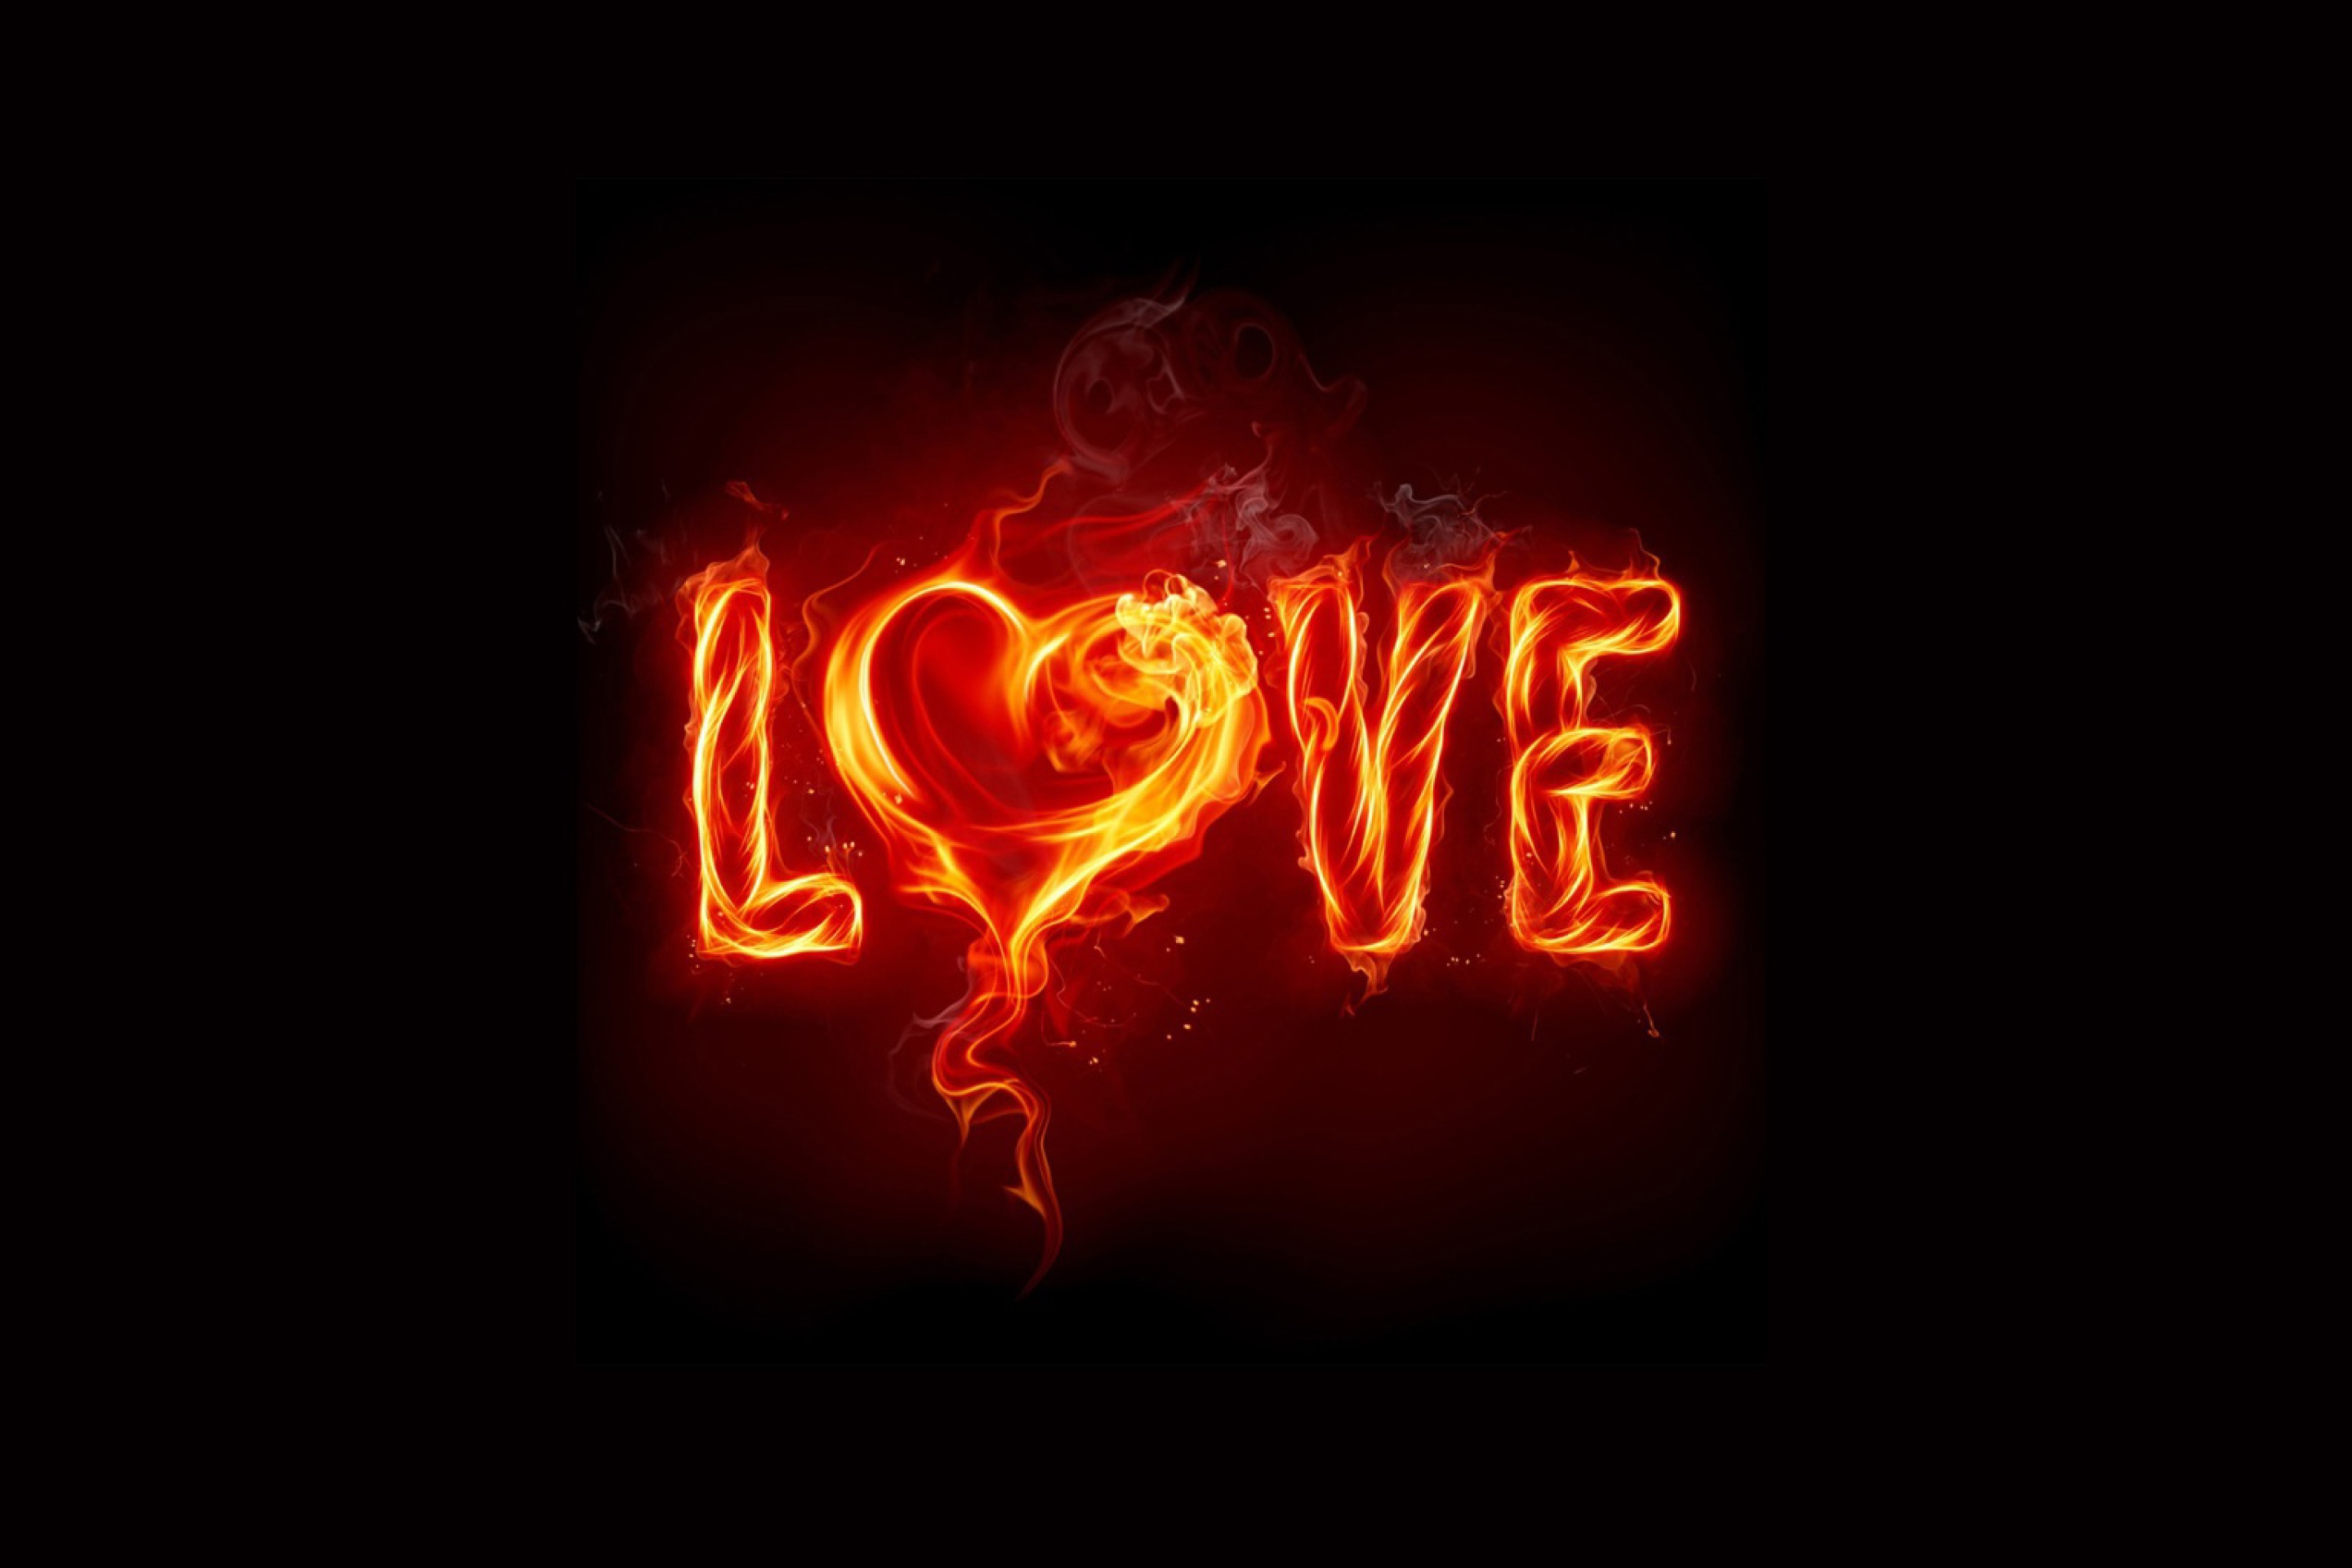 Das Fire Love Wallpaper 2880x1920